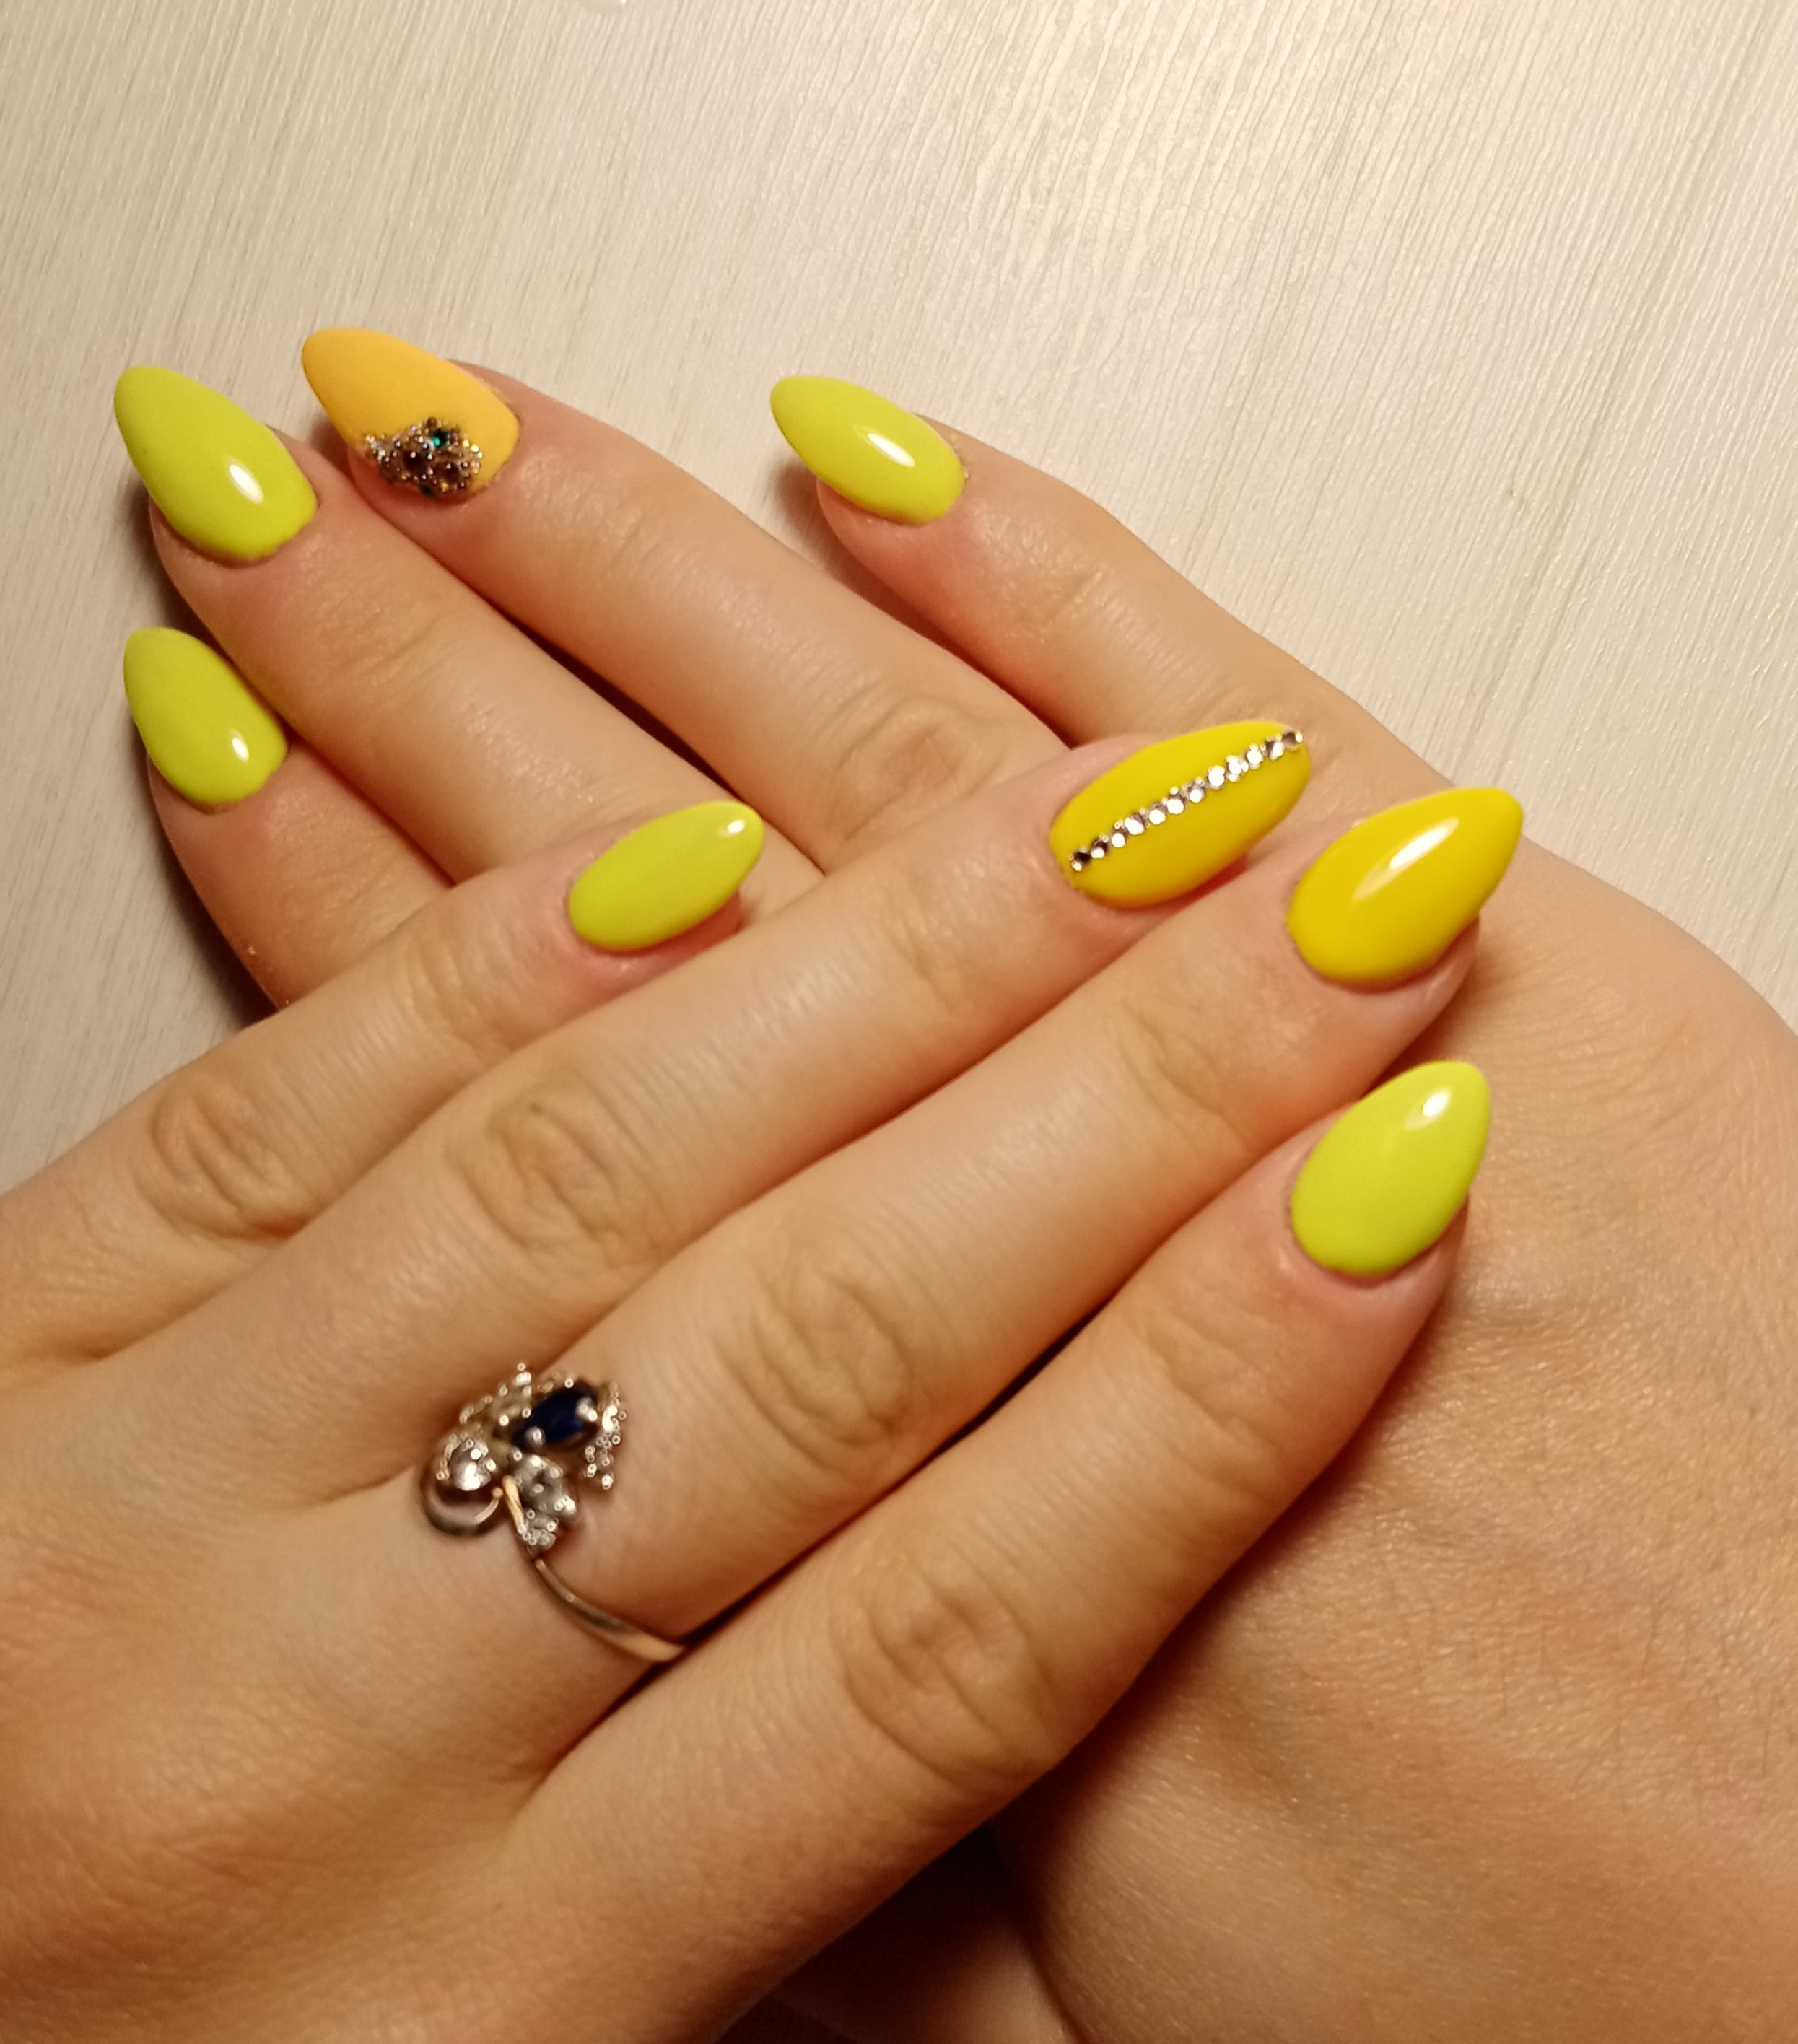 Маникюр со стразами в желтом цвете на короткие ногти.